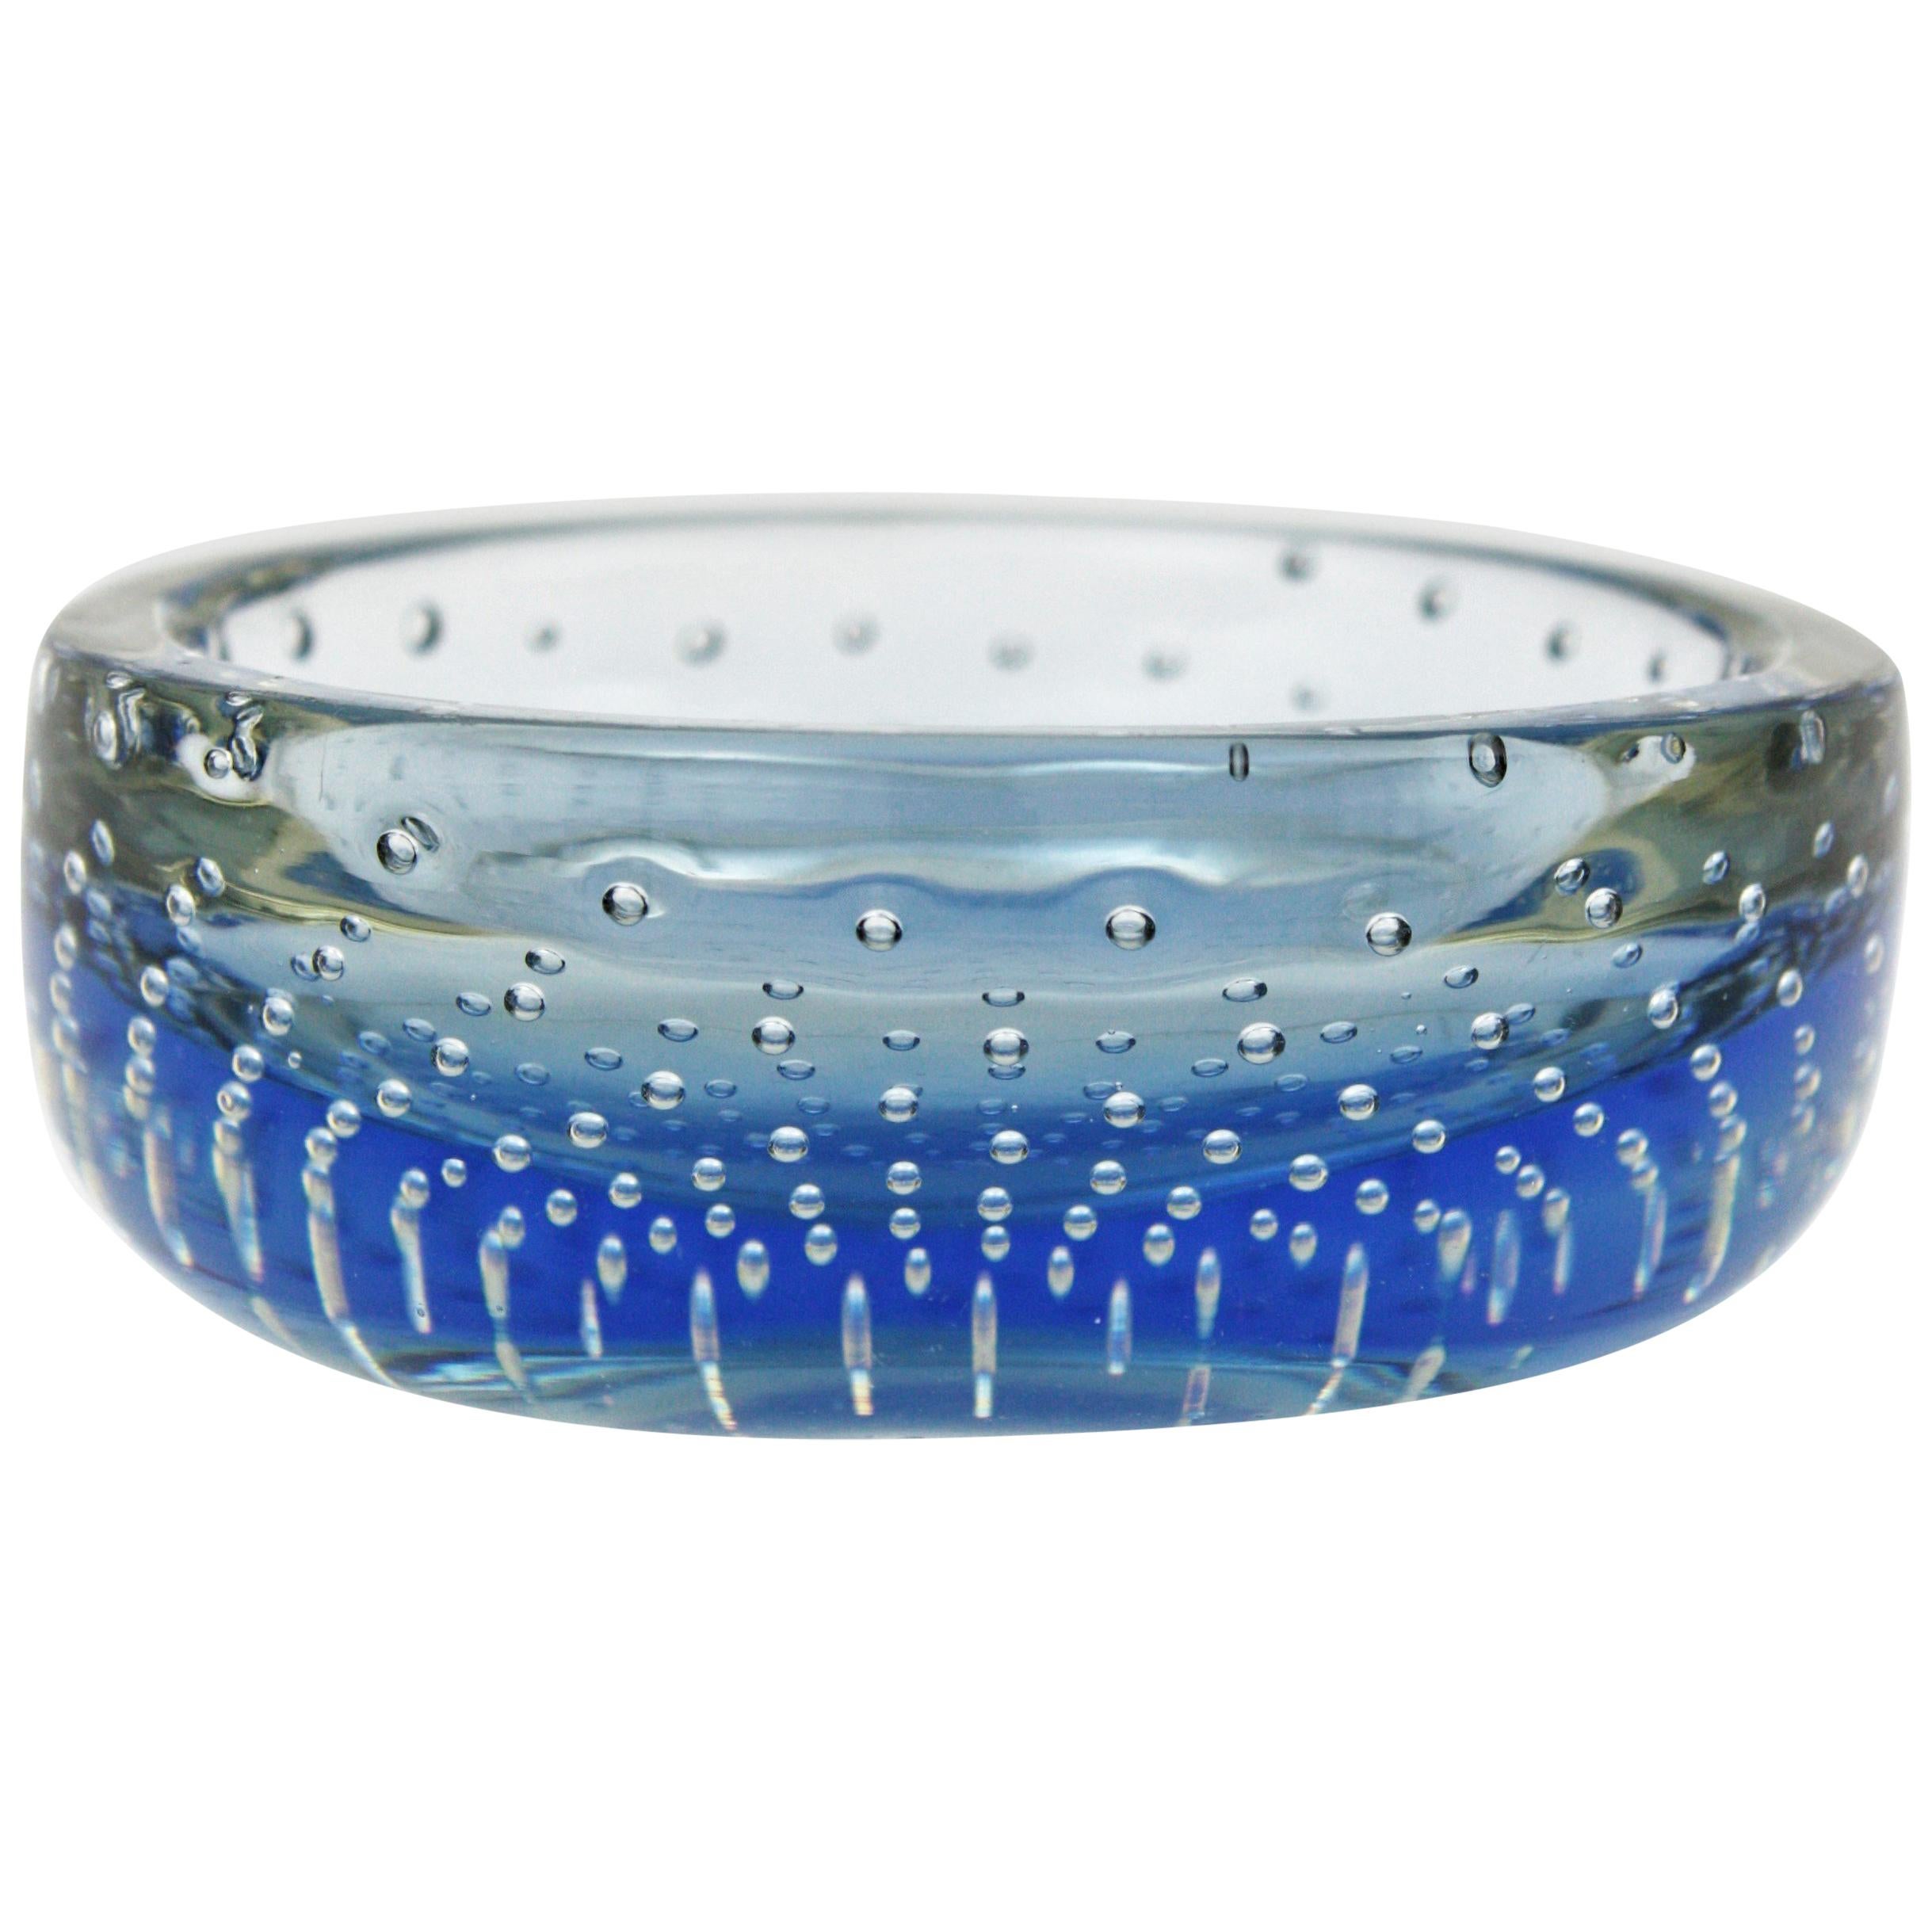 Runde mundgeblasene blaue Murano-Glasschale oder Aschenbecher mit kontrollierten Luftblasen, die Galliano Ferro zugeschrieben wird. Italien, 1960er Jahre.
Blaues Glas, das mit der Sommerso-Technik in Klarglas eingeschmolzen wurde. 
Hübsch als